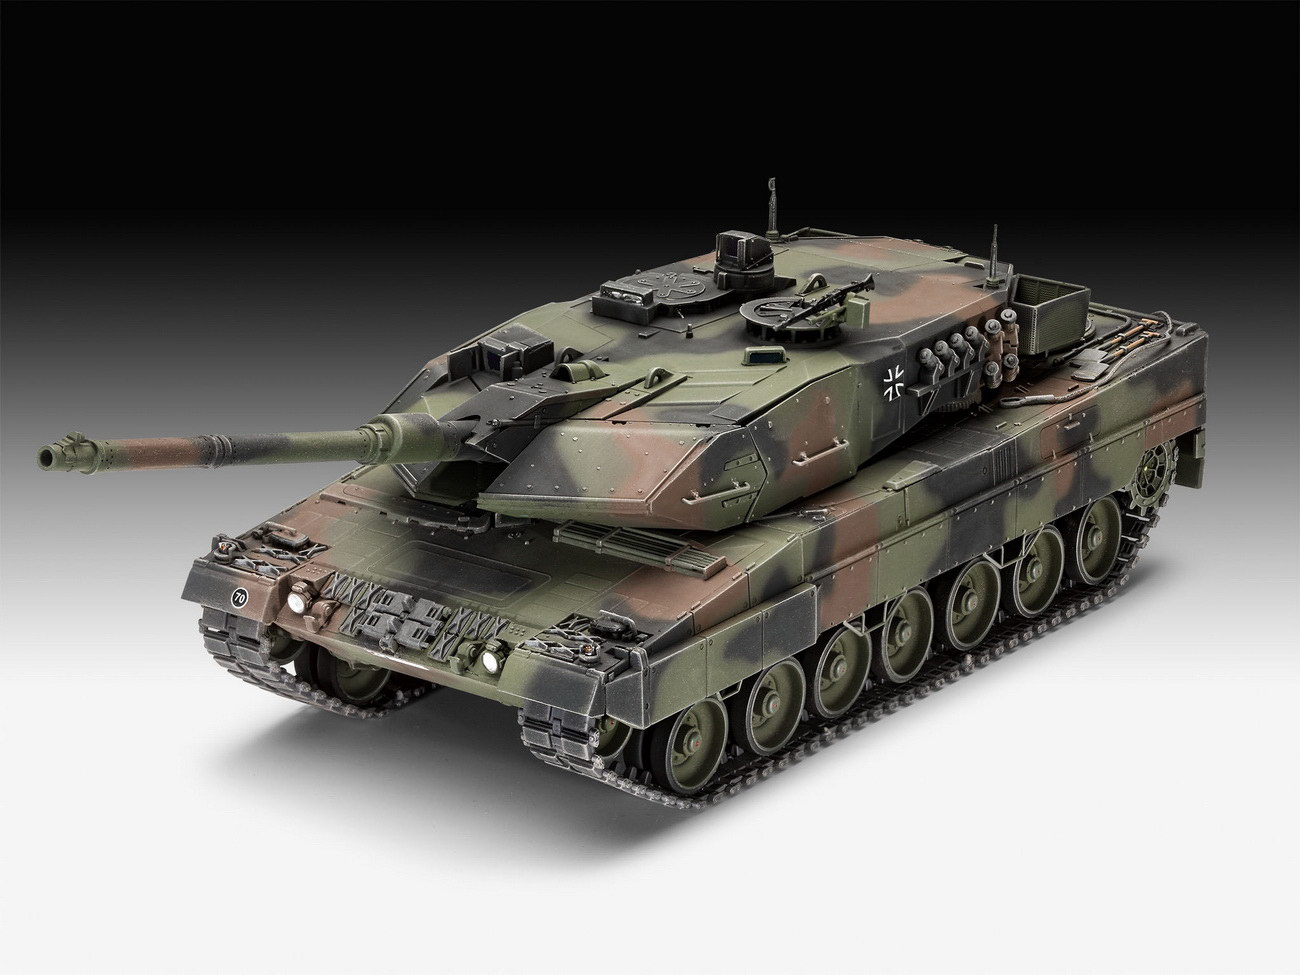 Revell 03281 - Leopard 2 A6 / A6NL - Panzer Modell